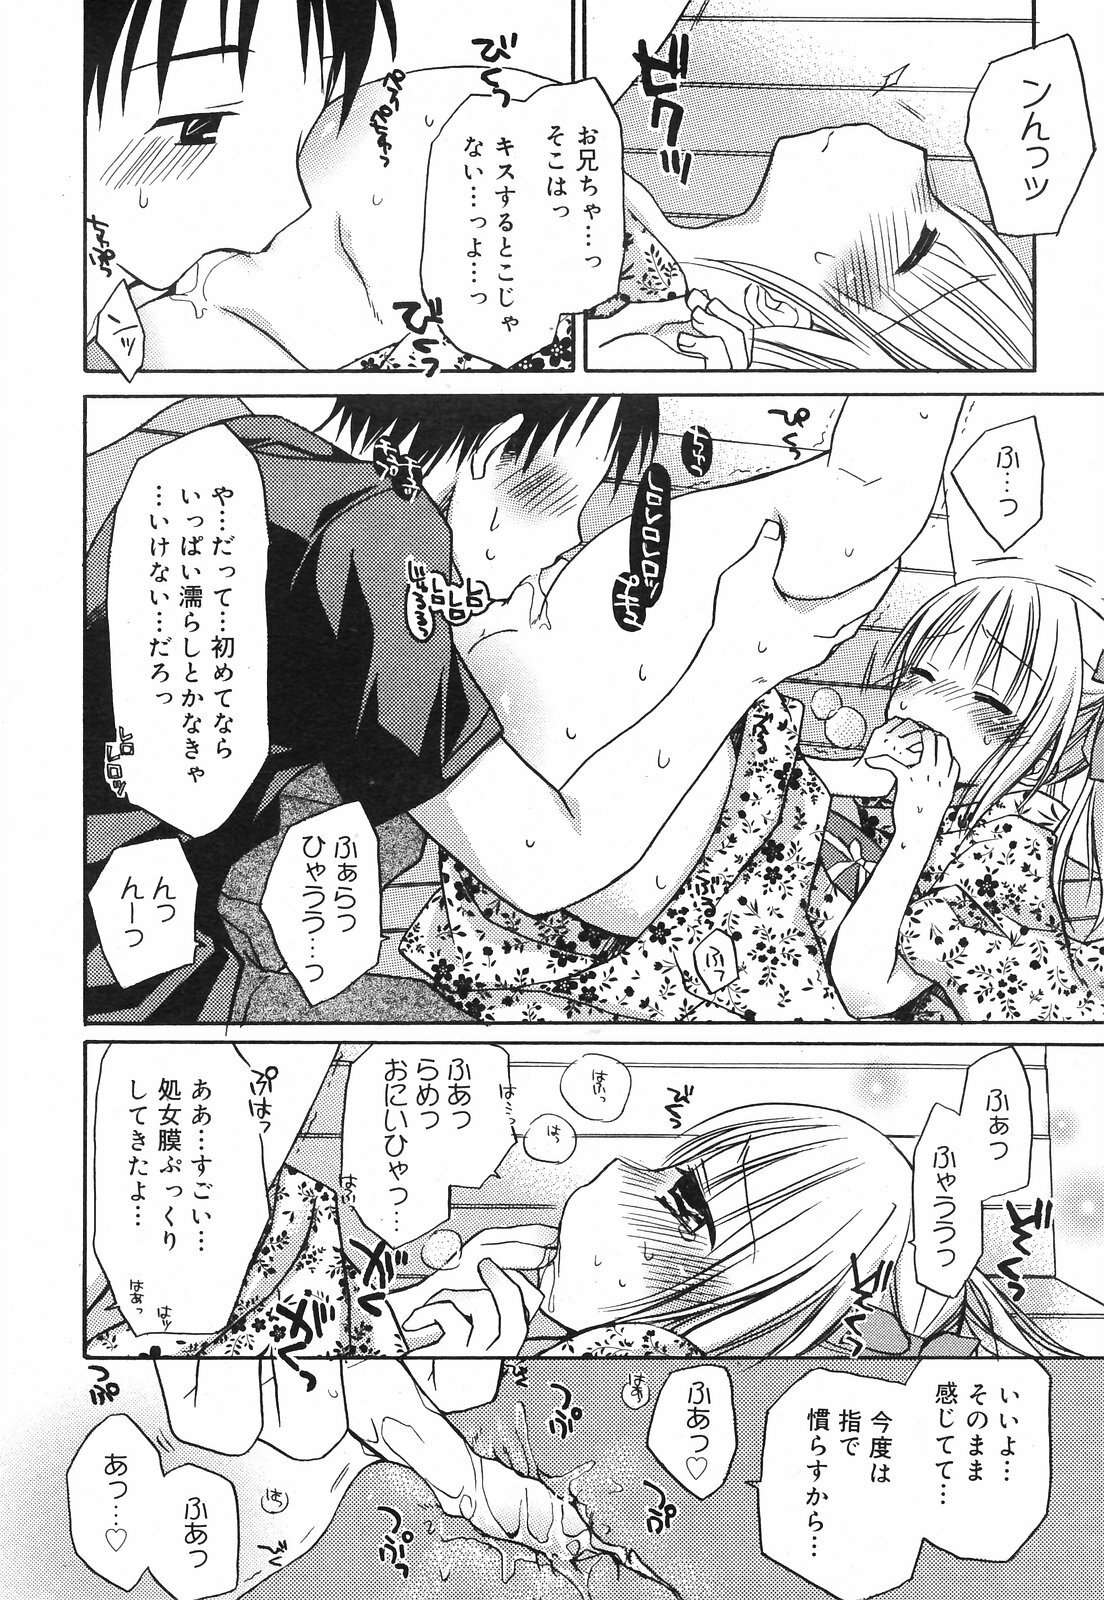 Manga Bangaichi 2008-09 page 50 full